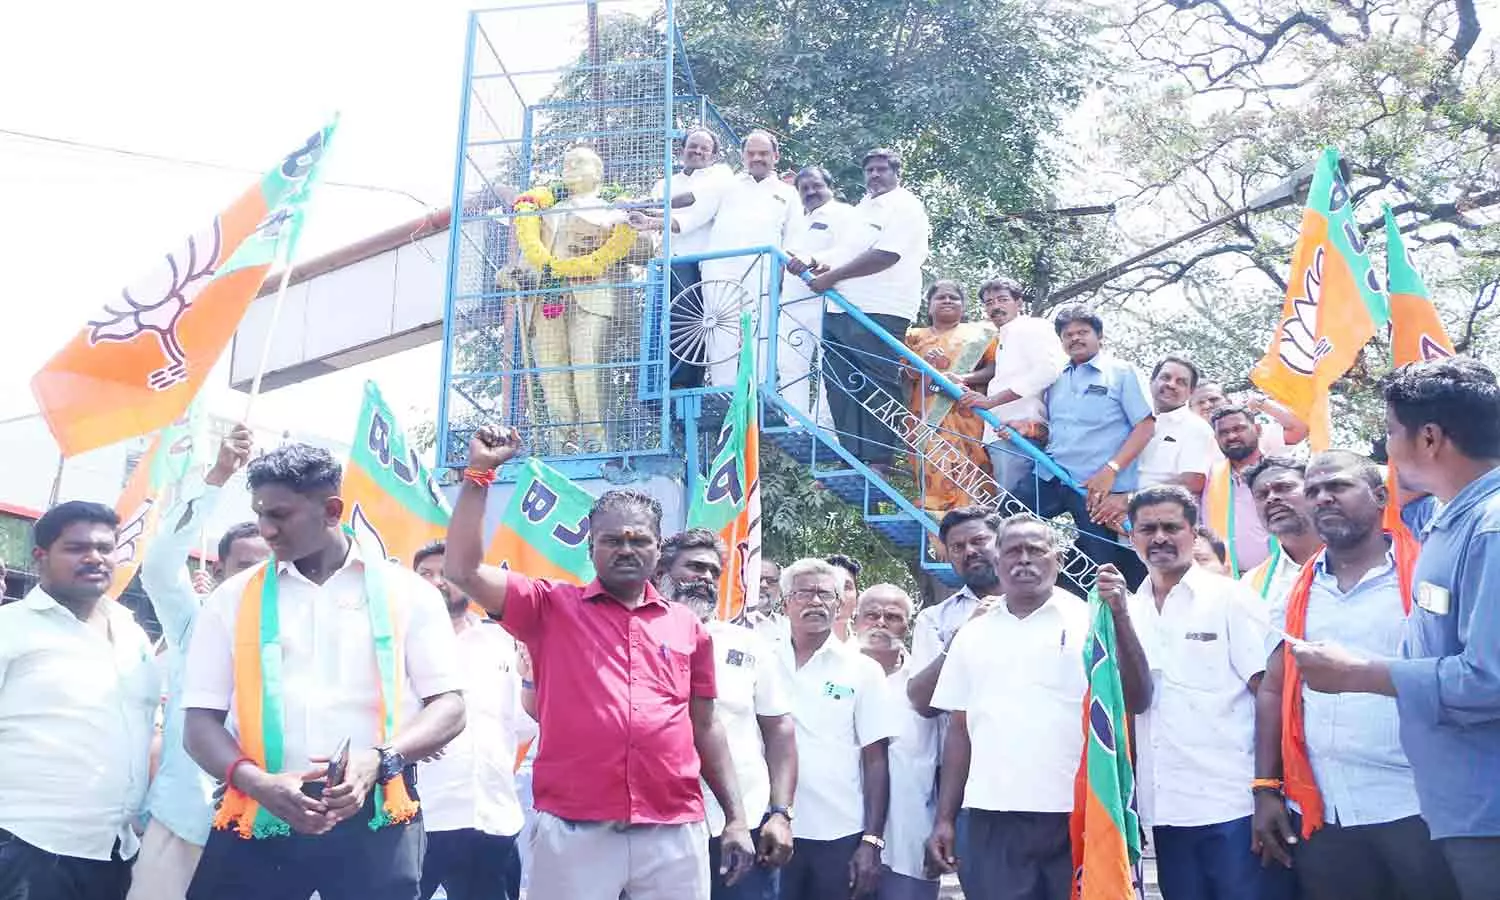 அம்பேத்கர் சிலையிடம் மனு அளித்த பா.ஜ.க.வினர் | Vellore News BJP petitioners  at Ambedkar statue